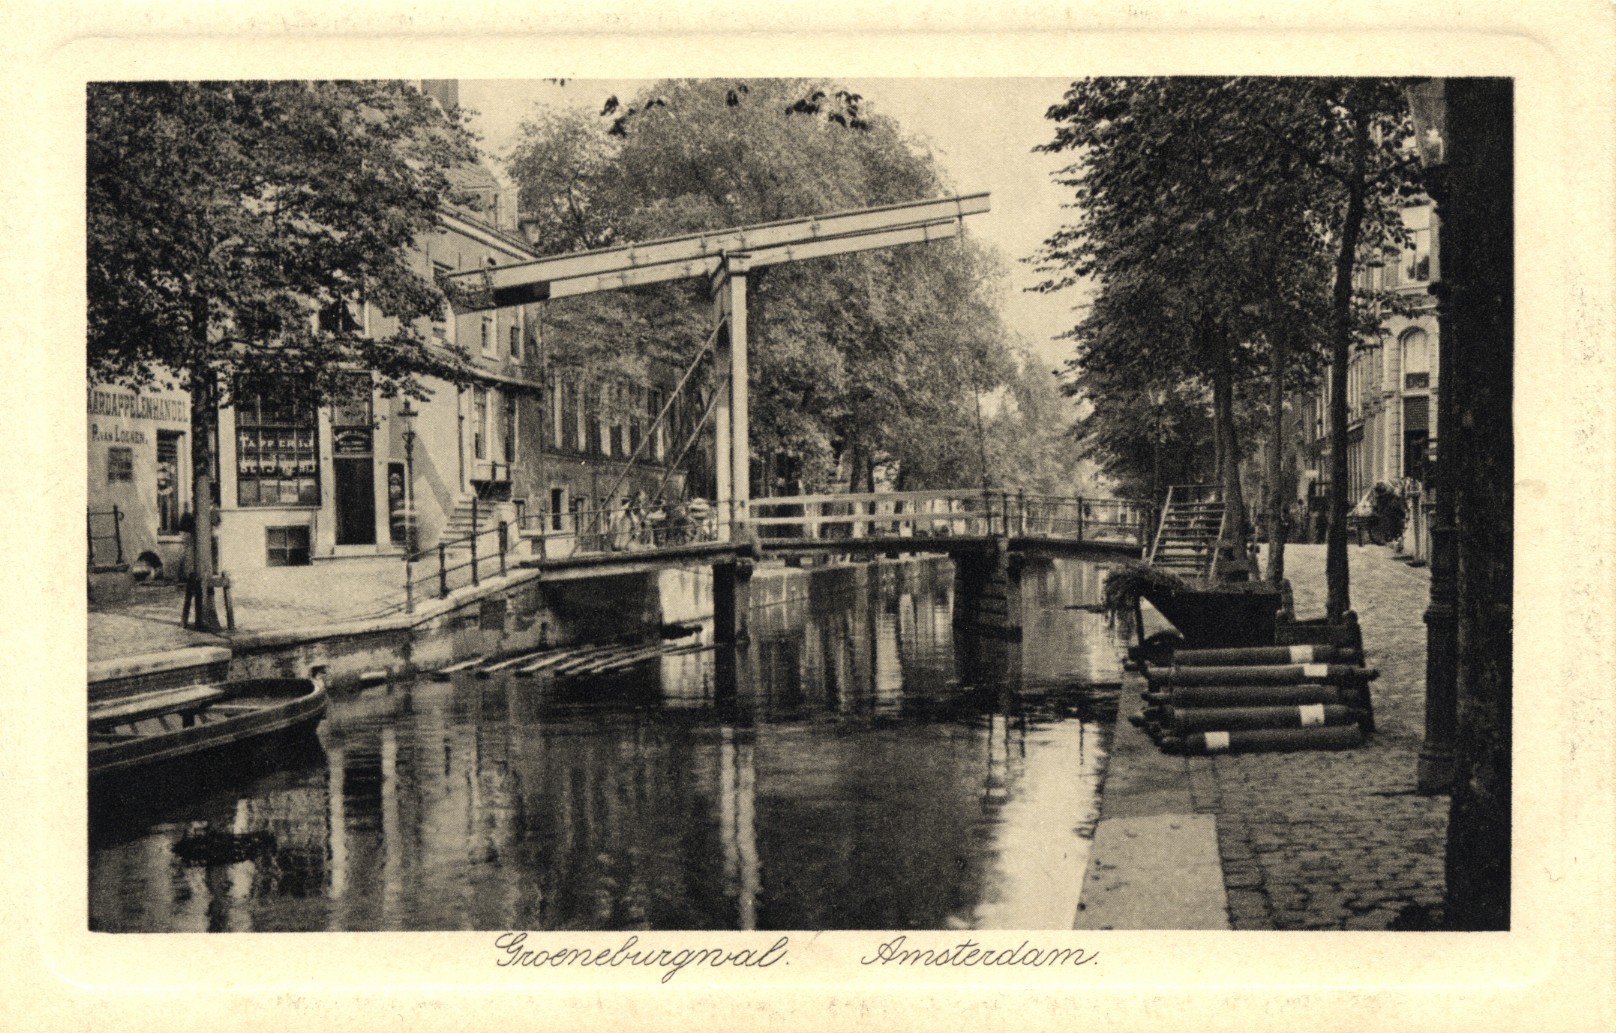 Amsterdam, year unknown: Groeneburgwal